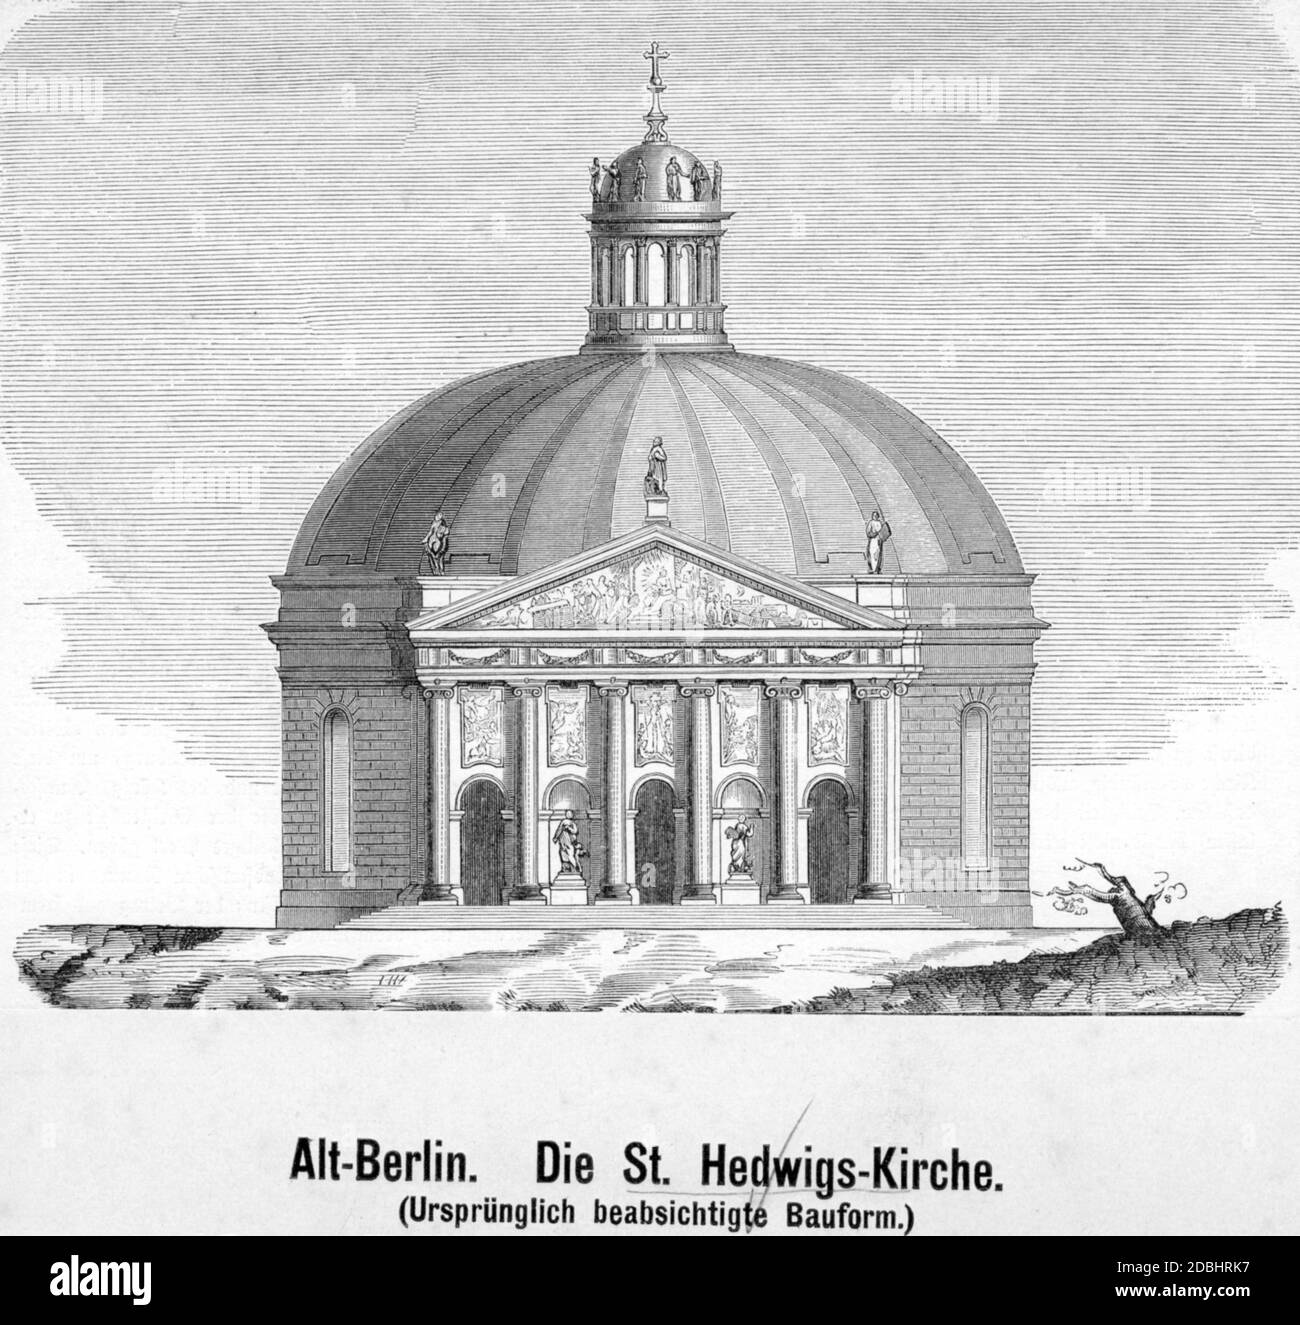 Questa incisione, realizzata intorno al 1740, mostra la Cattedrale di Sant'Hedwig a Bebelplatz, Berlino-Mitte, come originariamente era destinata ad essere costruita. Foto Stock